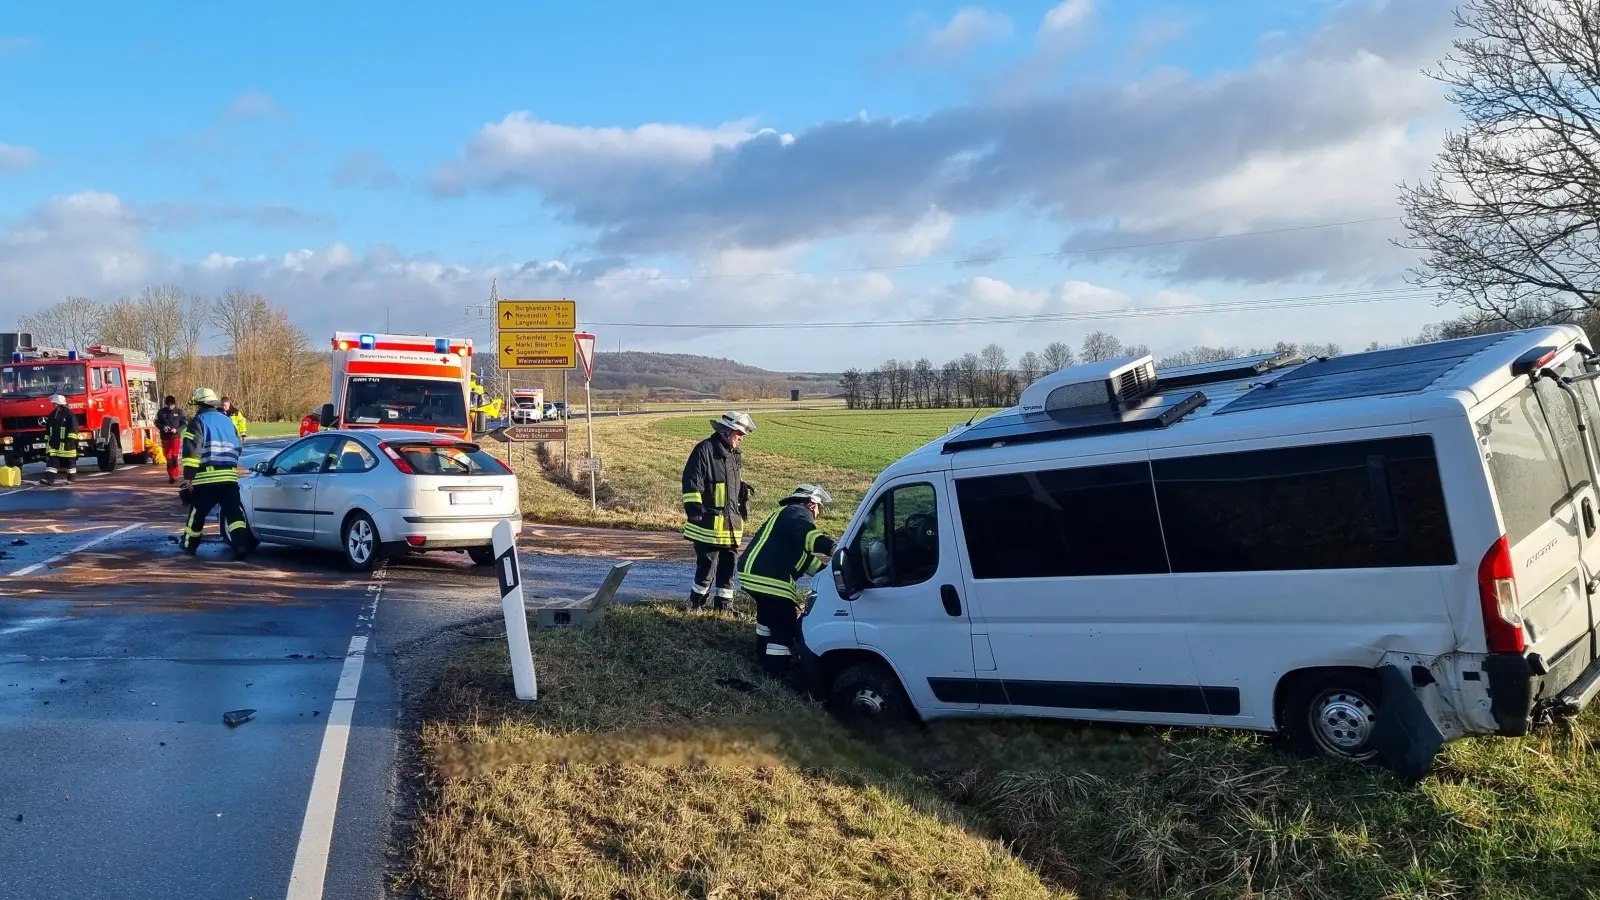 Zu einem heftigen Zusammenstoß zwischen einem Kleintransporter und einem Pkw kam es am Dienstag kurz vor 9 Uhr bei Sugenheim. (Foto: Rainer Weiskirchen)